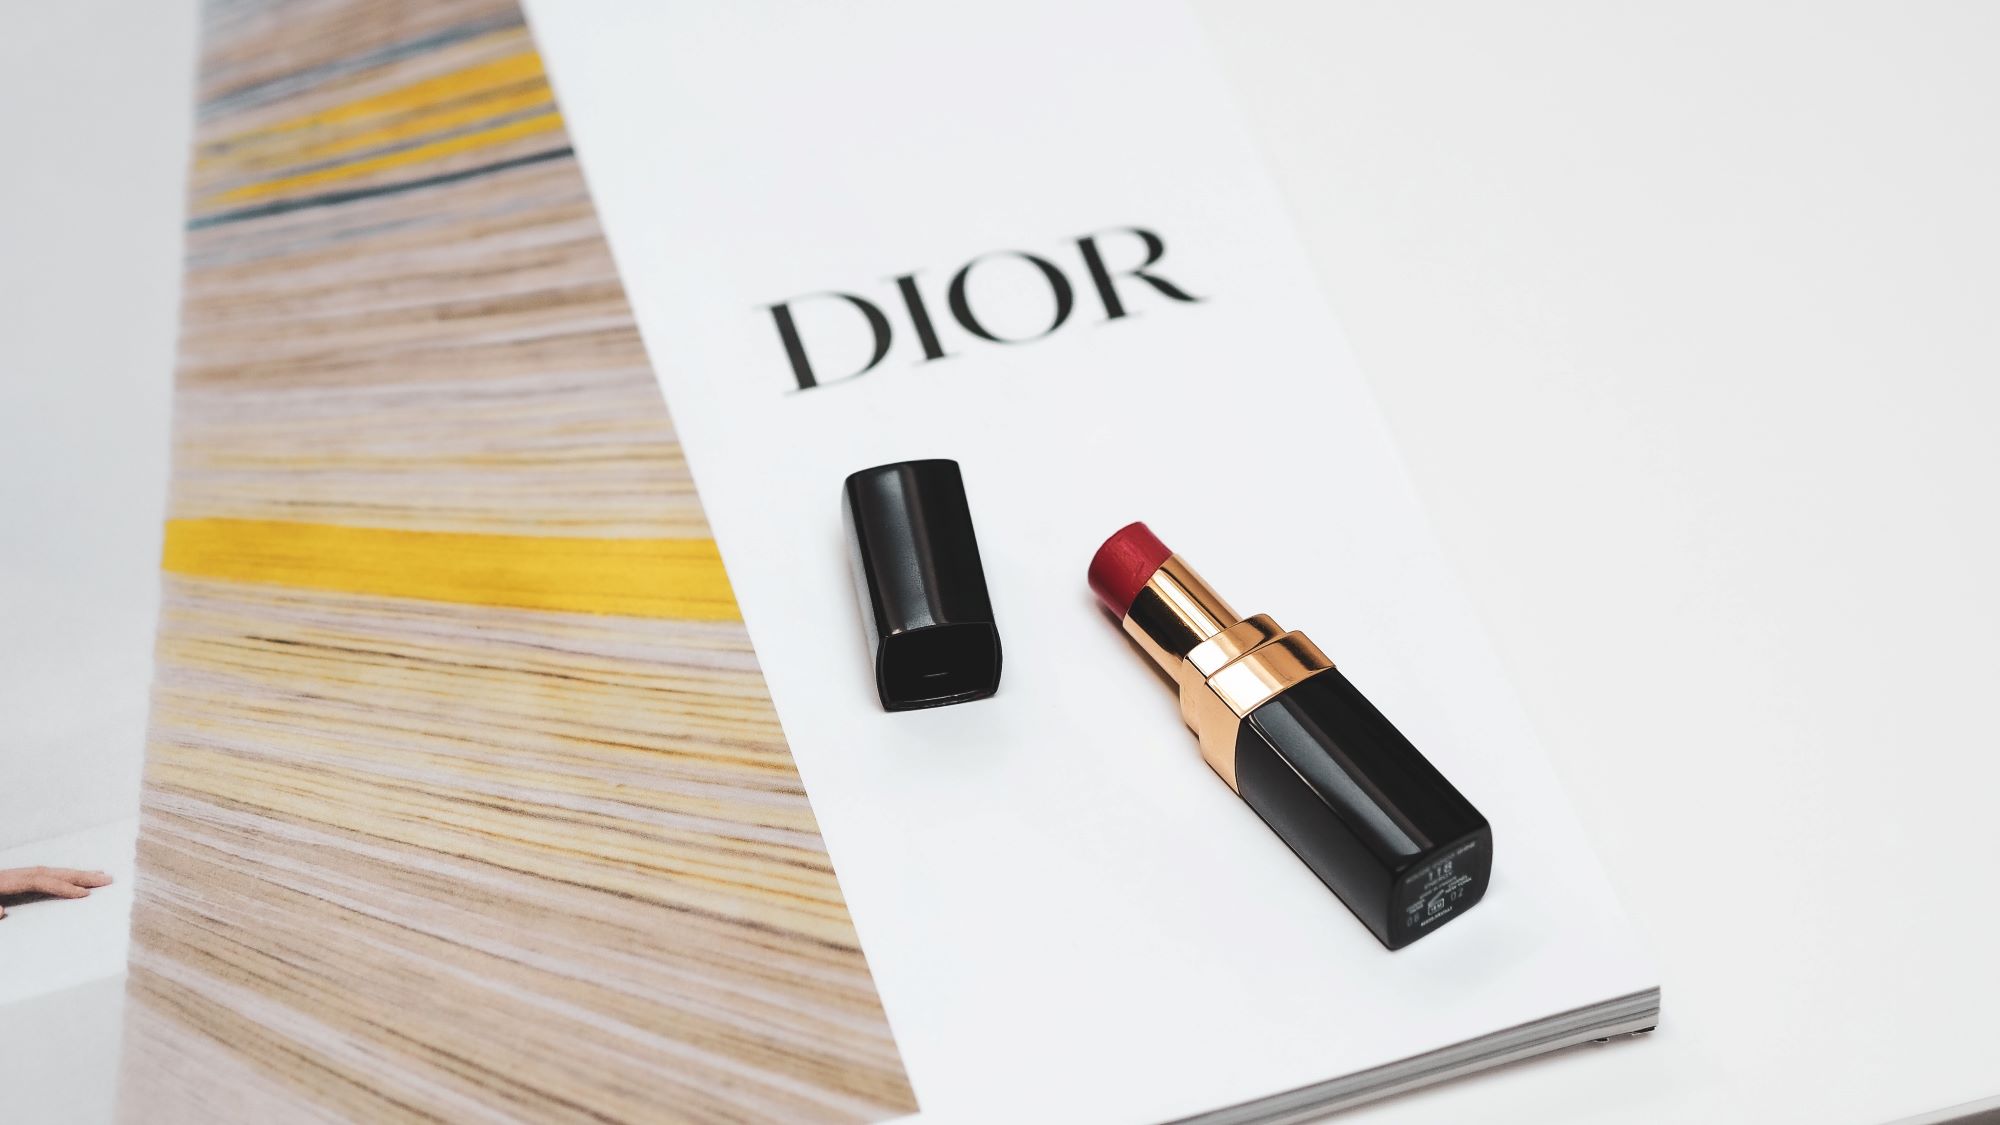 Dior lipsticks